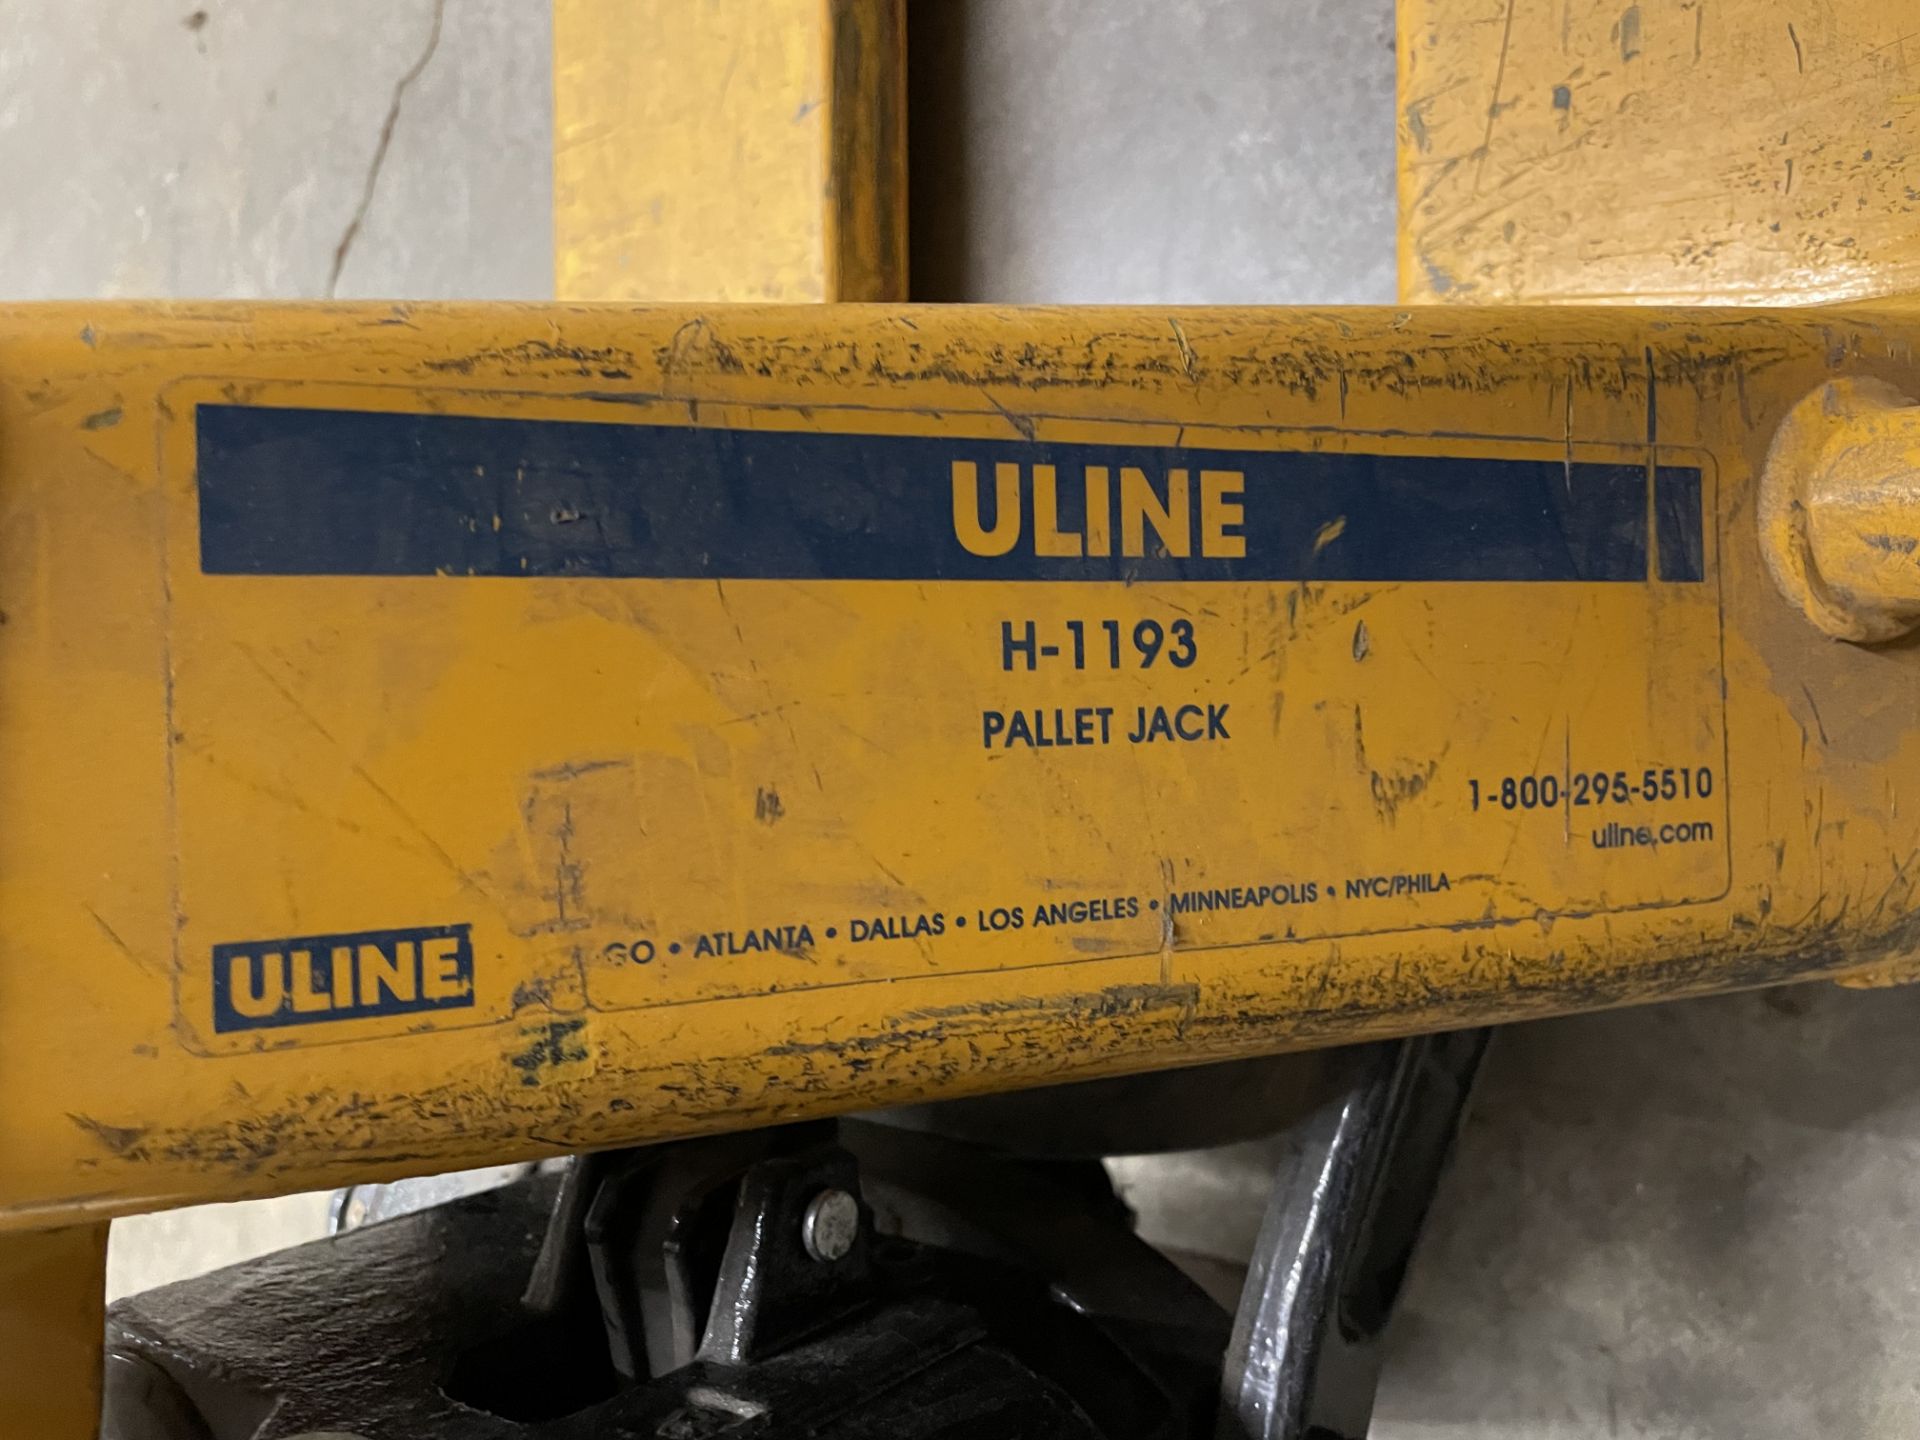 Uline Model H-1193 Narrow Fork Pallet Jack, 5,500 Lb. Capacity - Image 3 of 3